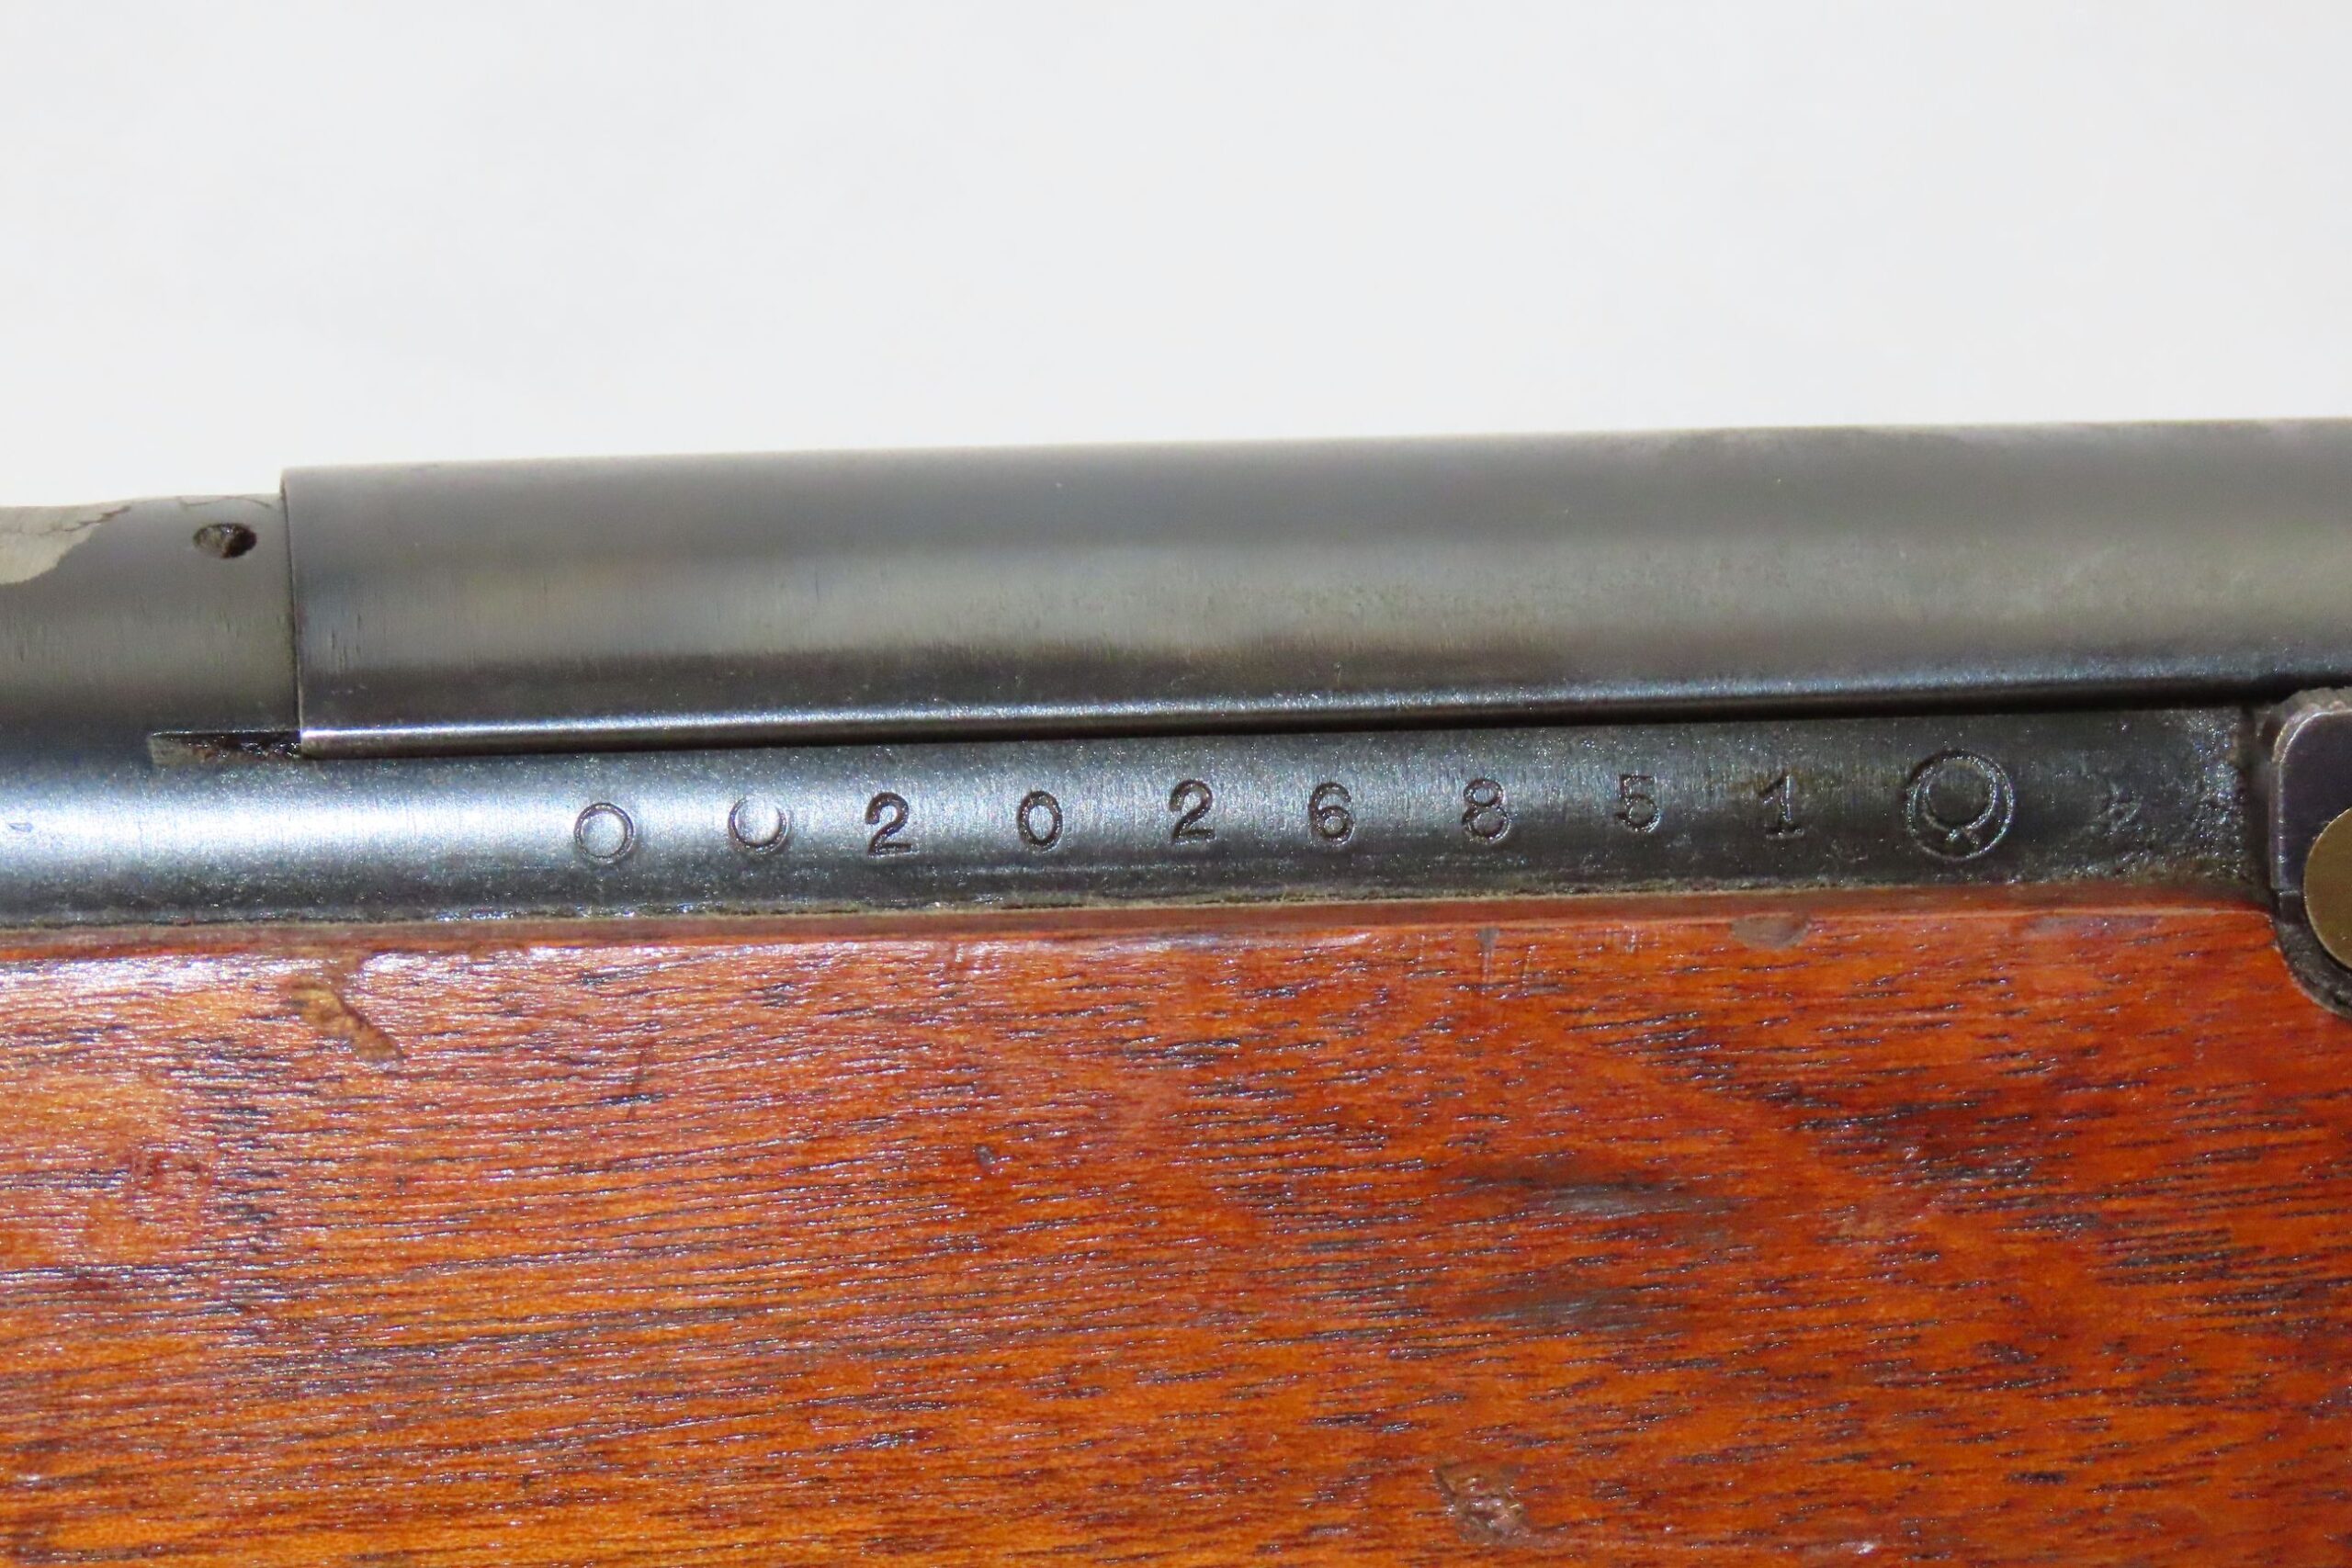 Japanese nagoya Arsenal Type 38 Rifle 3.28 C&RAntique012 